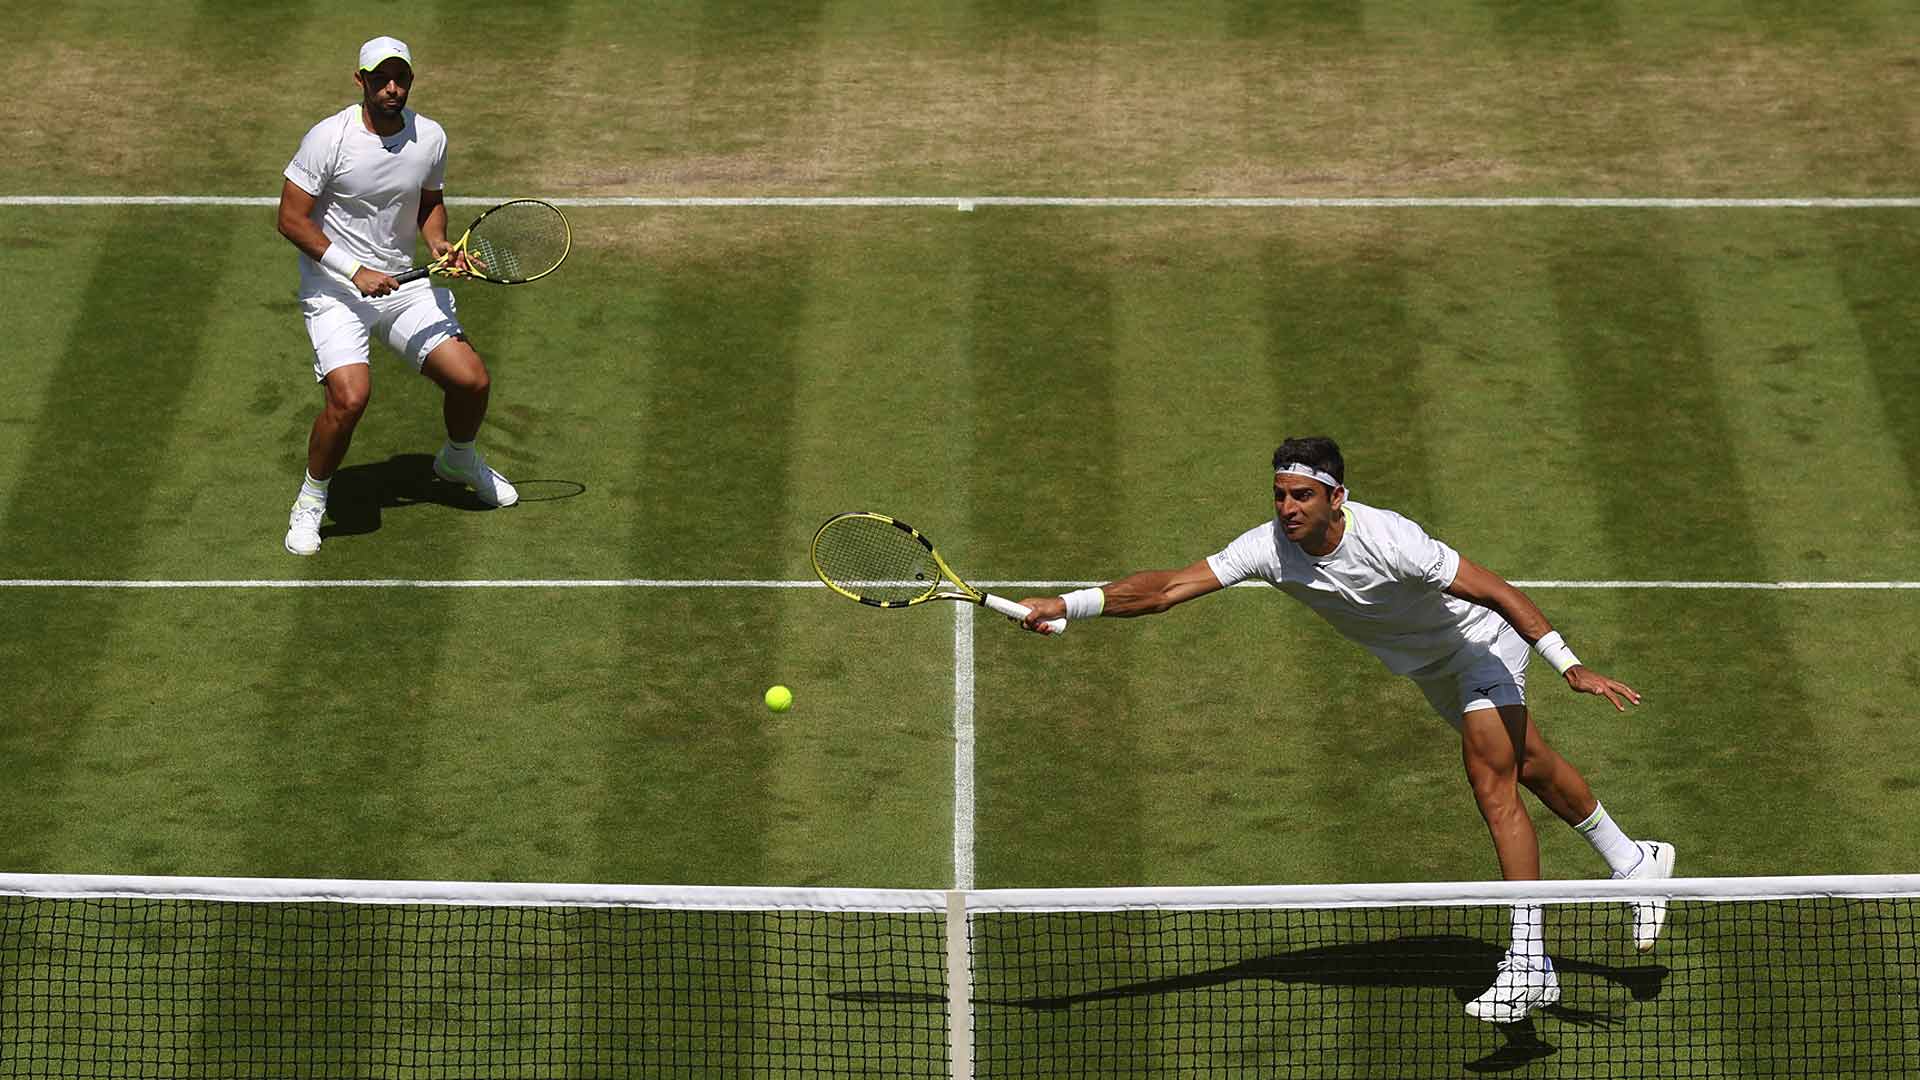 Juan Sebastian Cabal/Robert Farah Cruise To Wimbledon QF Spot ATP Tour Tennis